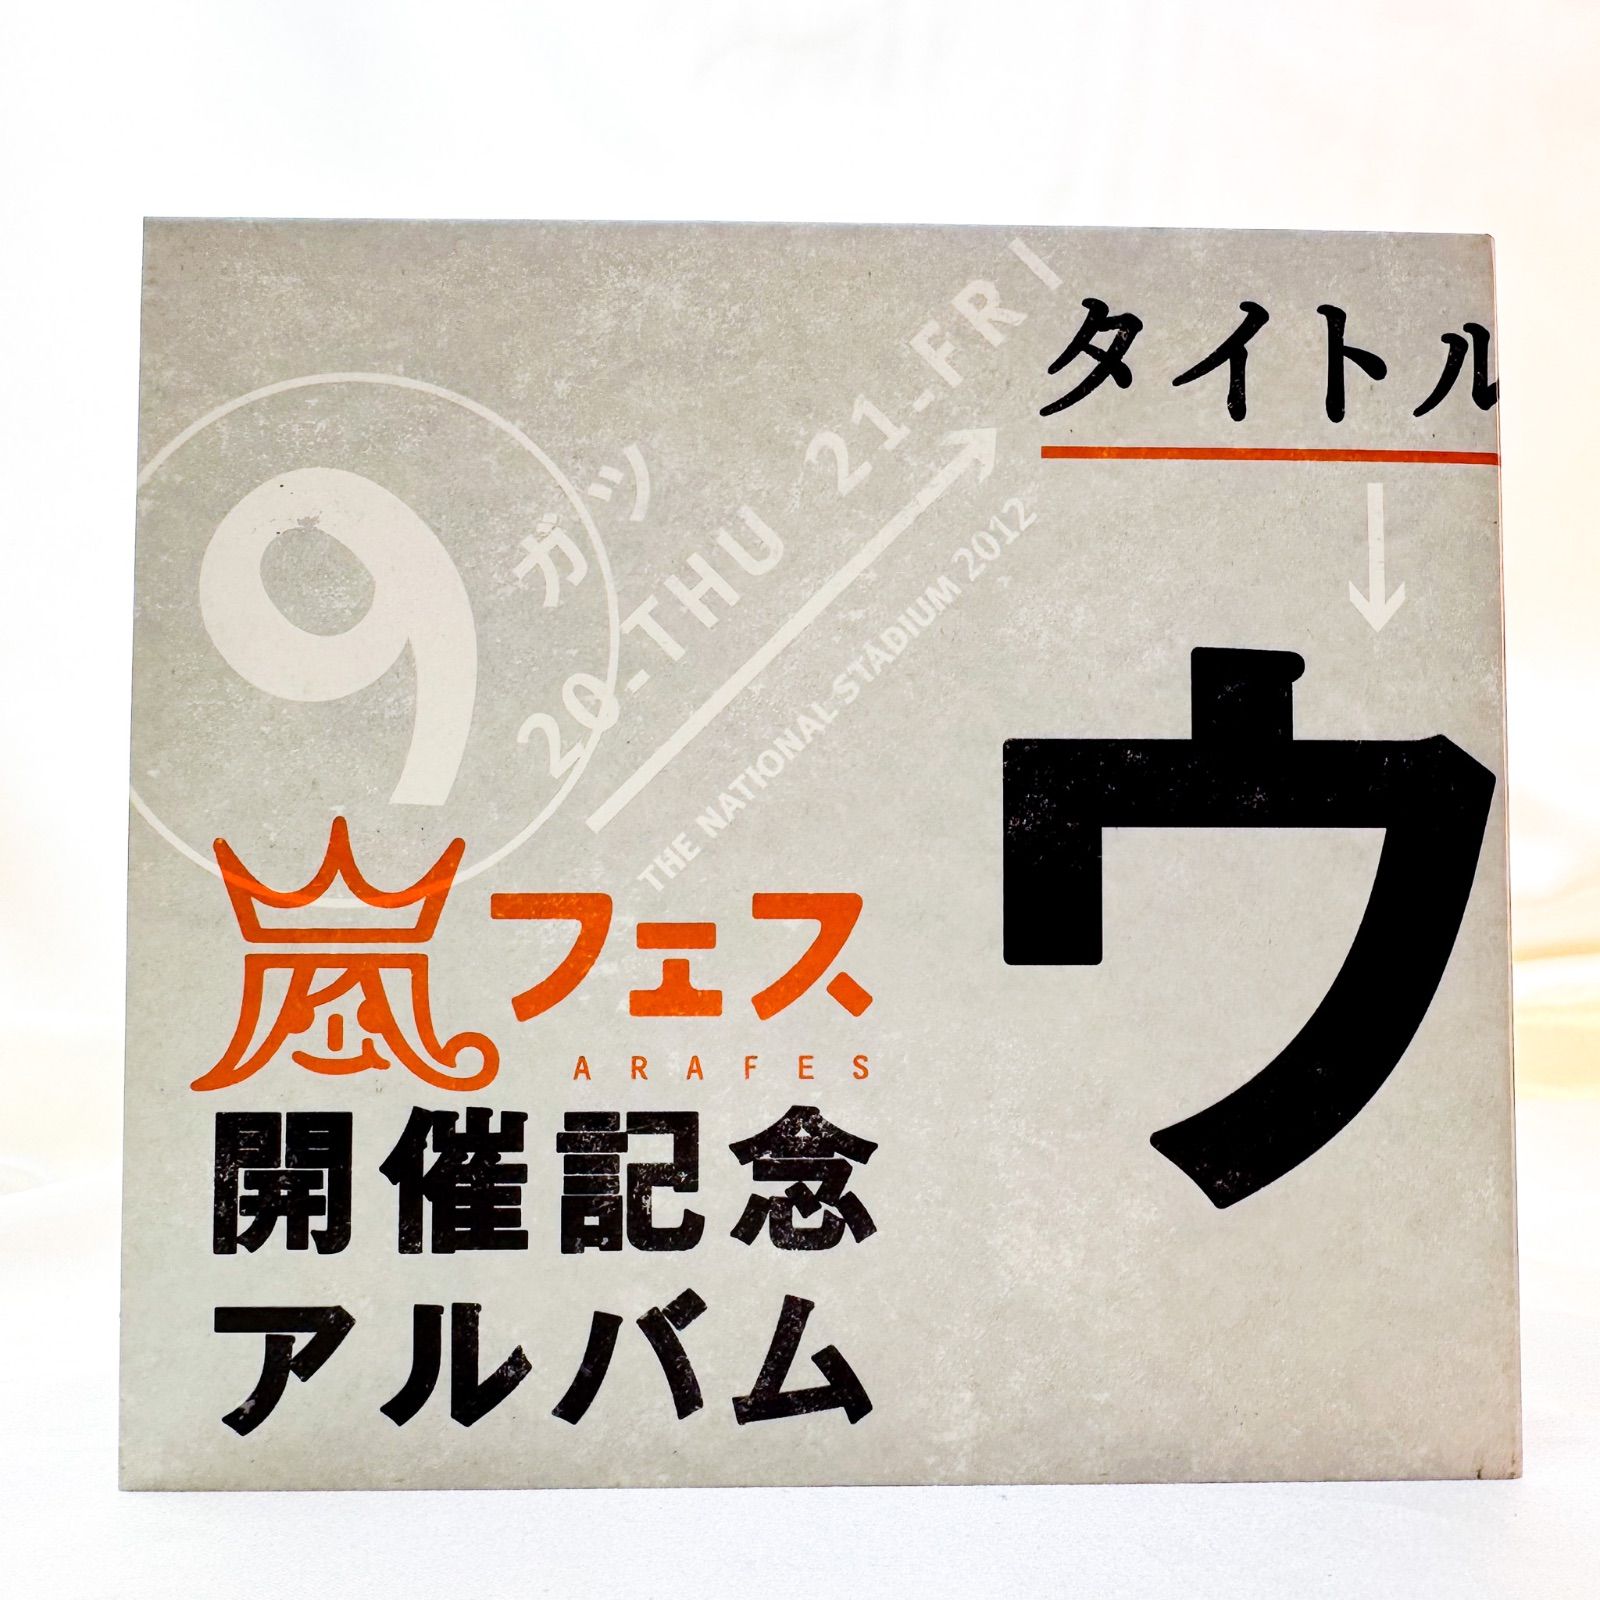 嵐『ウラ嵐マニア』CD アルバム (B) - メルカリ